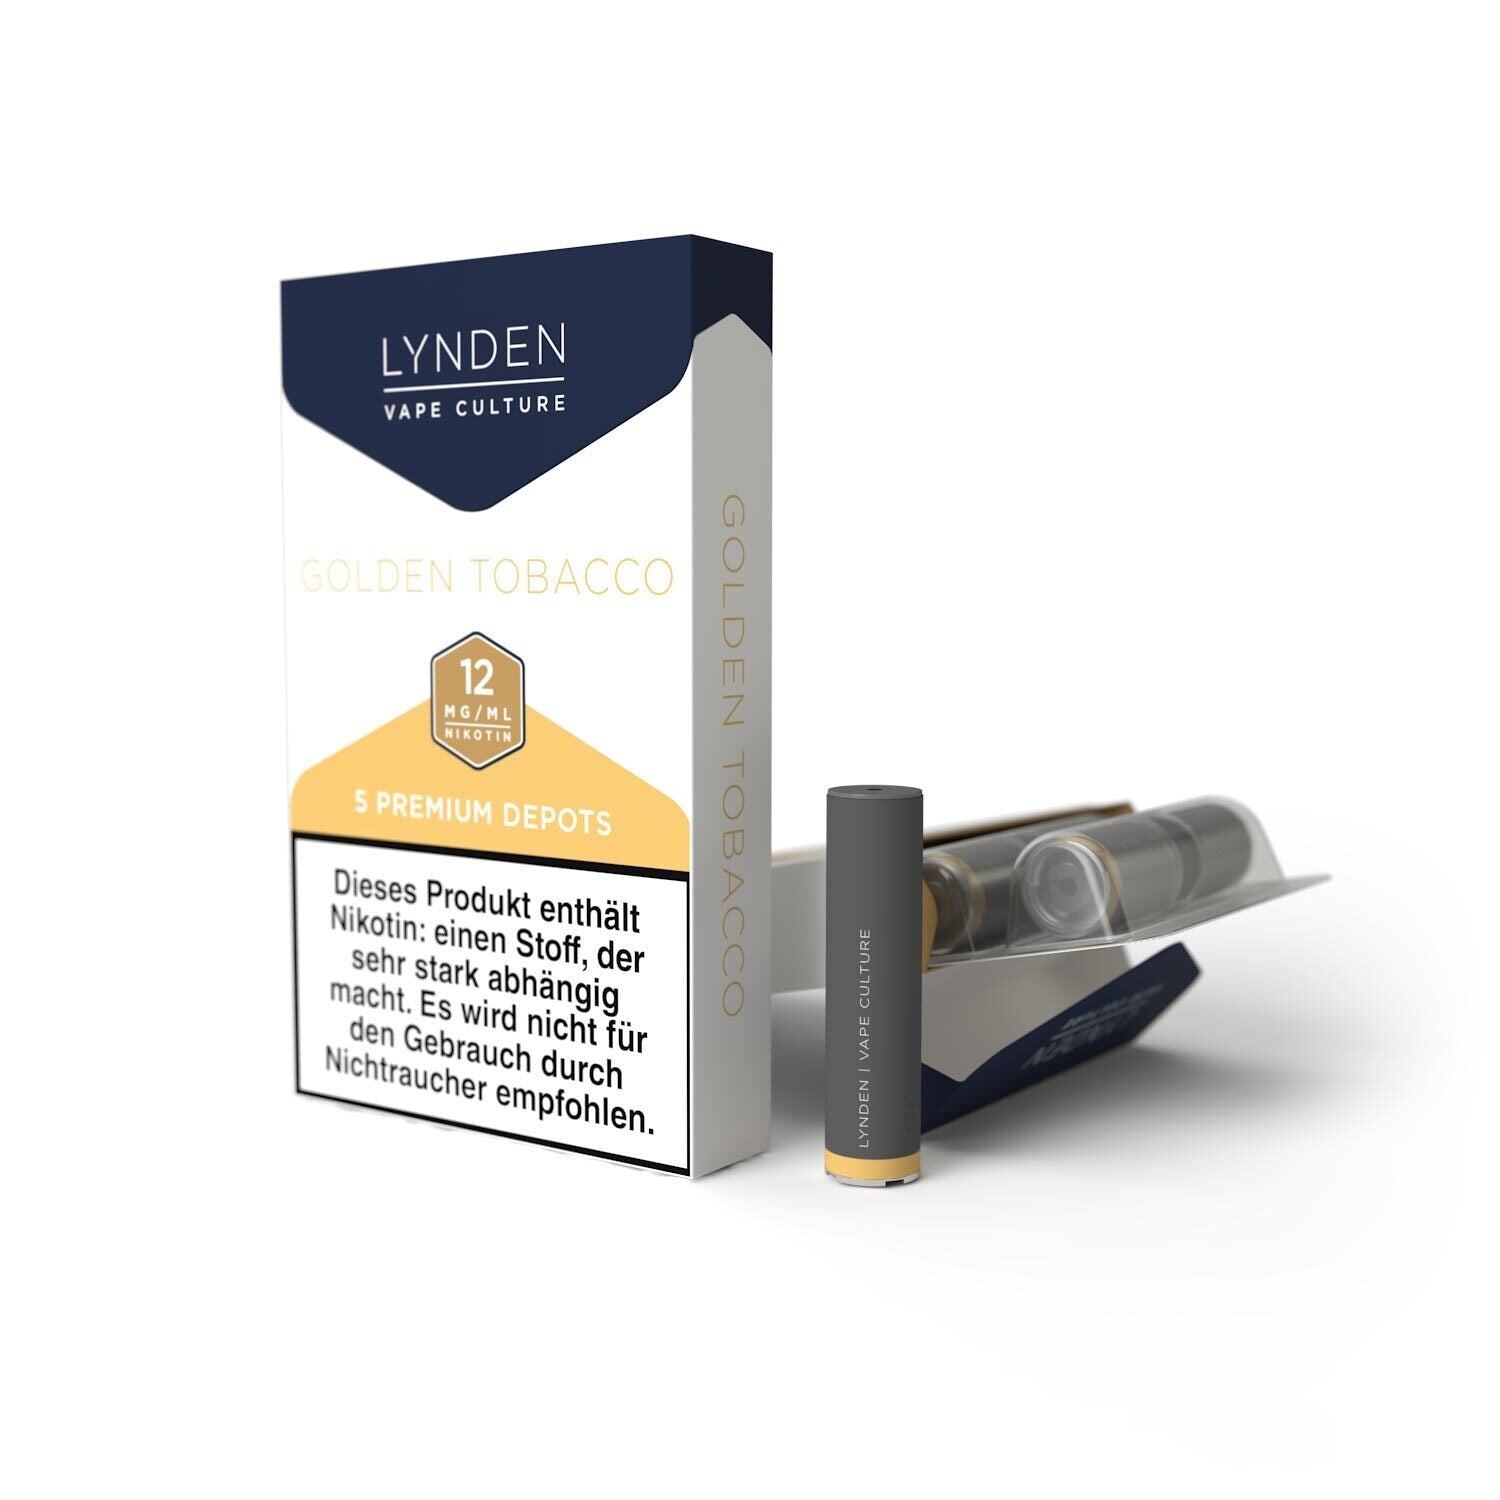 25-Vorratspack LYNDEN Premium Depots Golden Tobacco mit 125 Depots